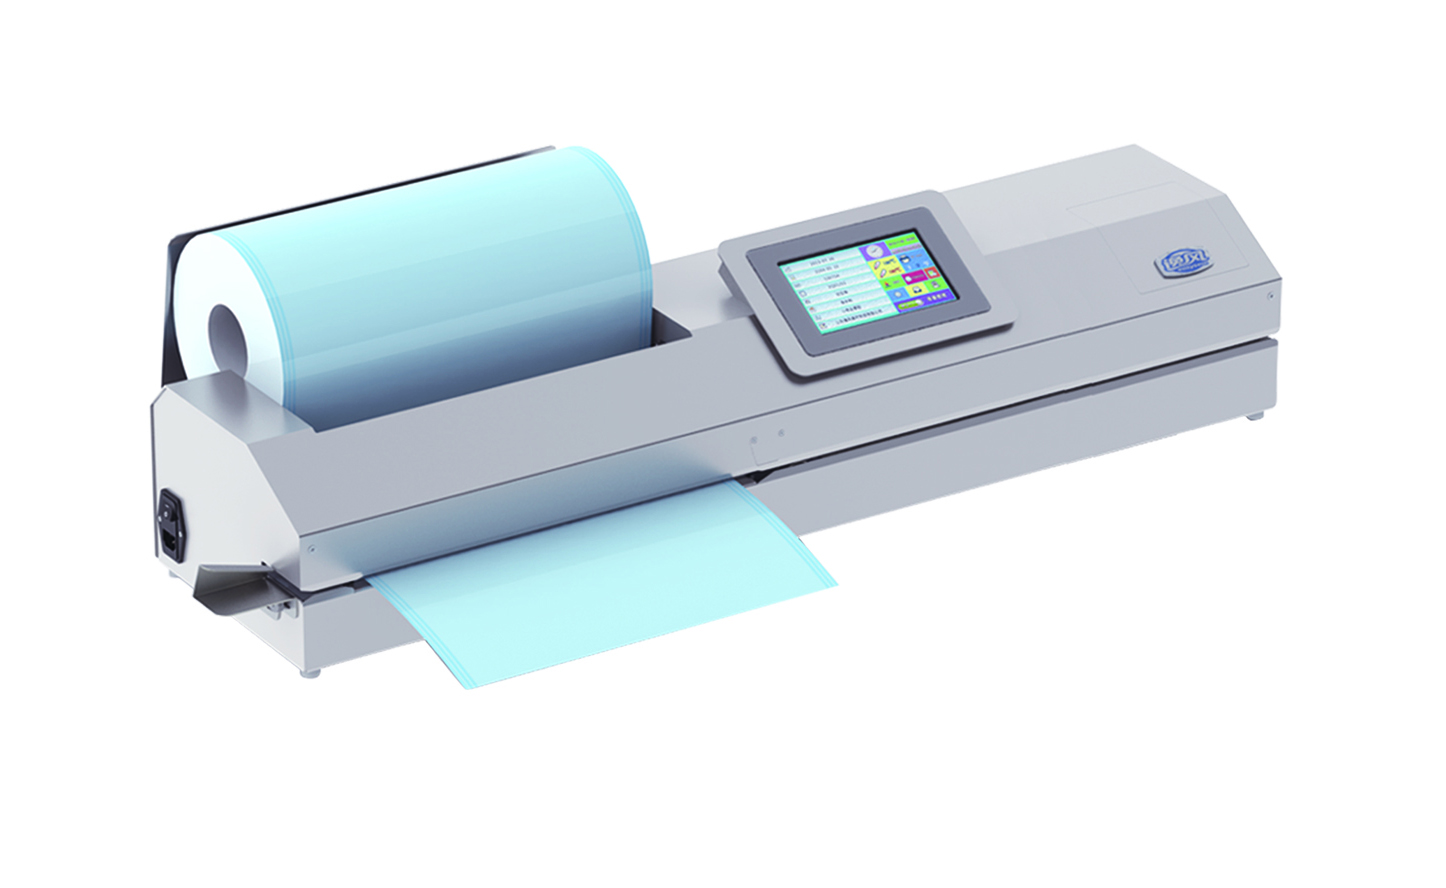 Cutting-sealing-printing machine